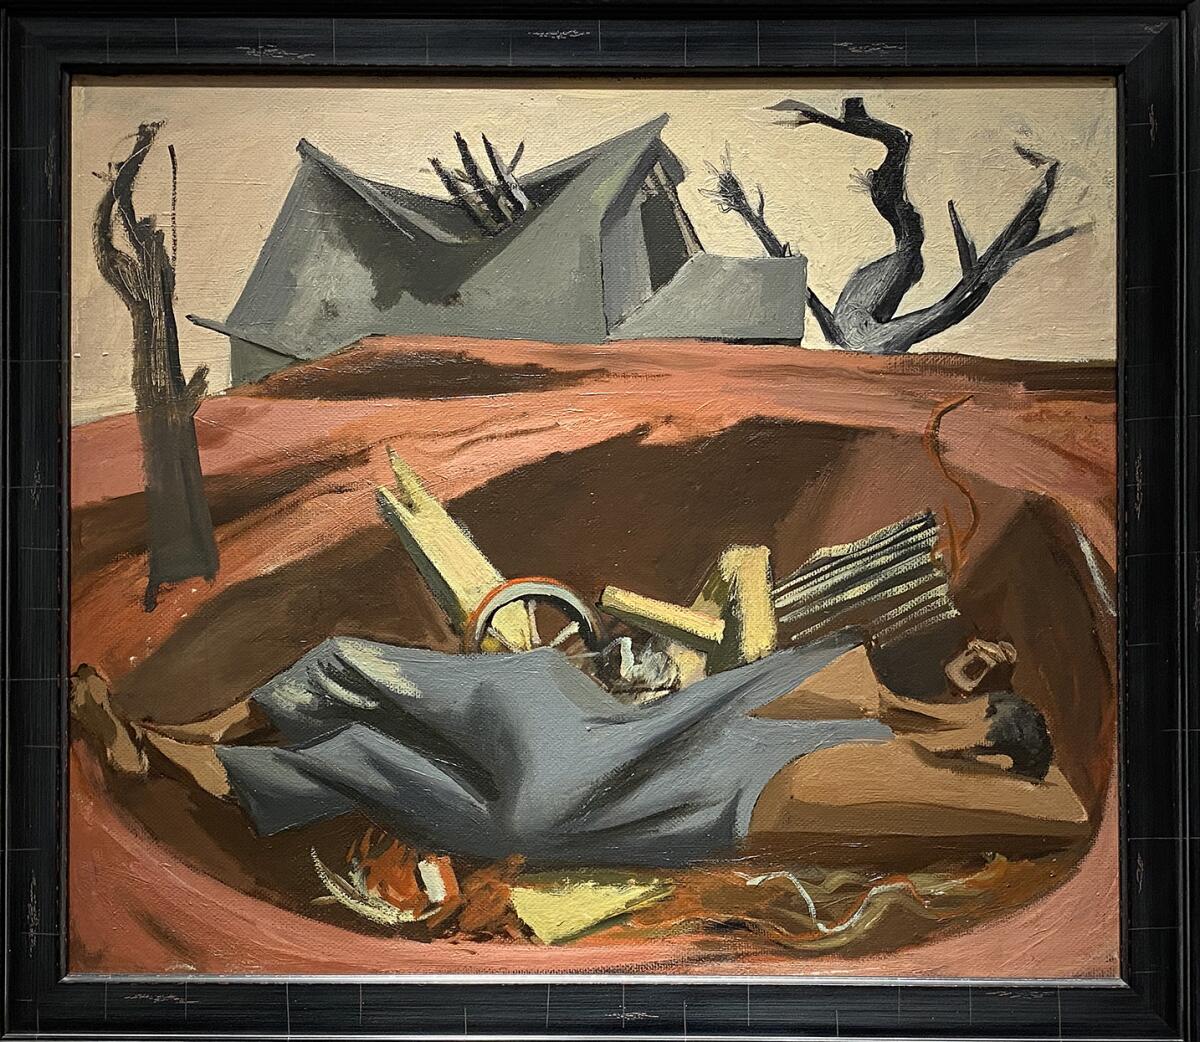 “Plowed Under” by Anton Refregier (1936)